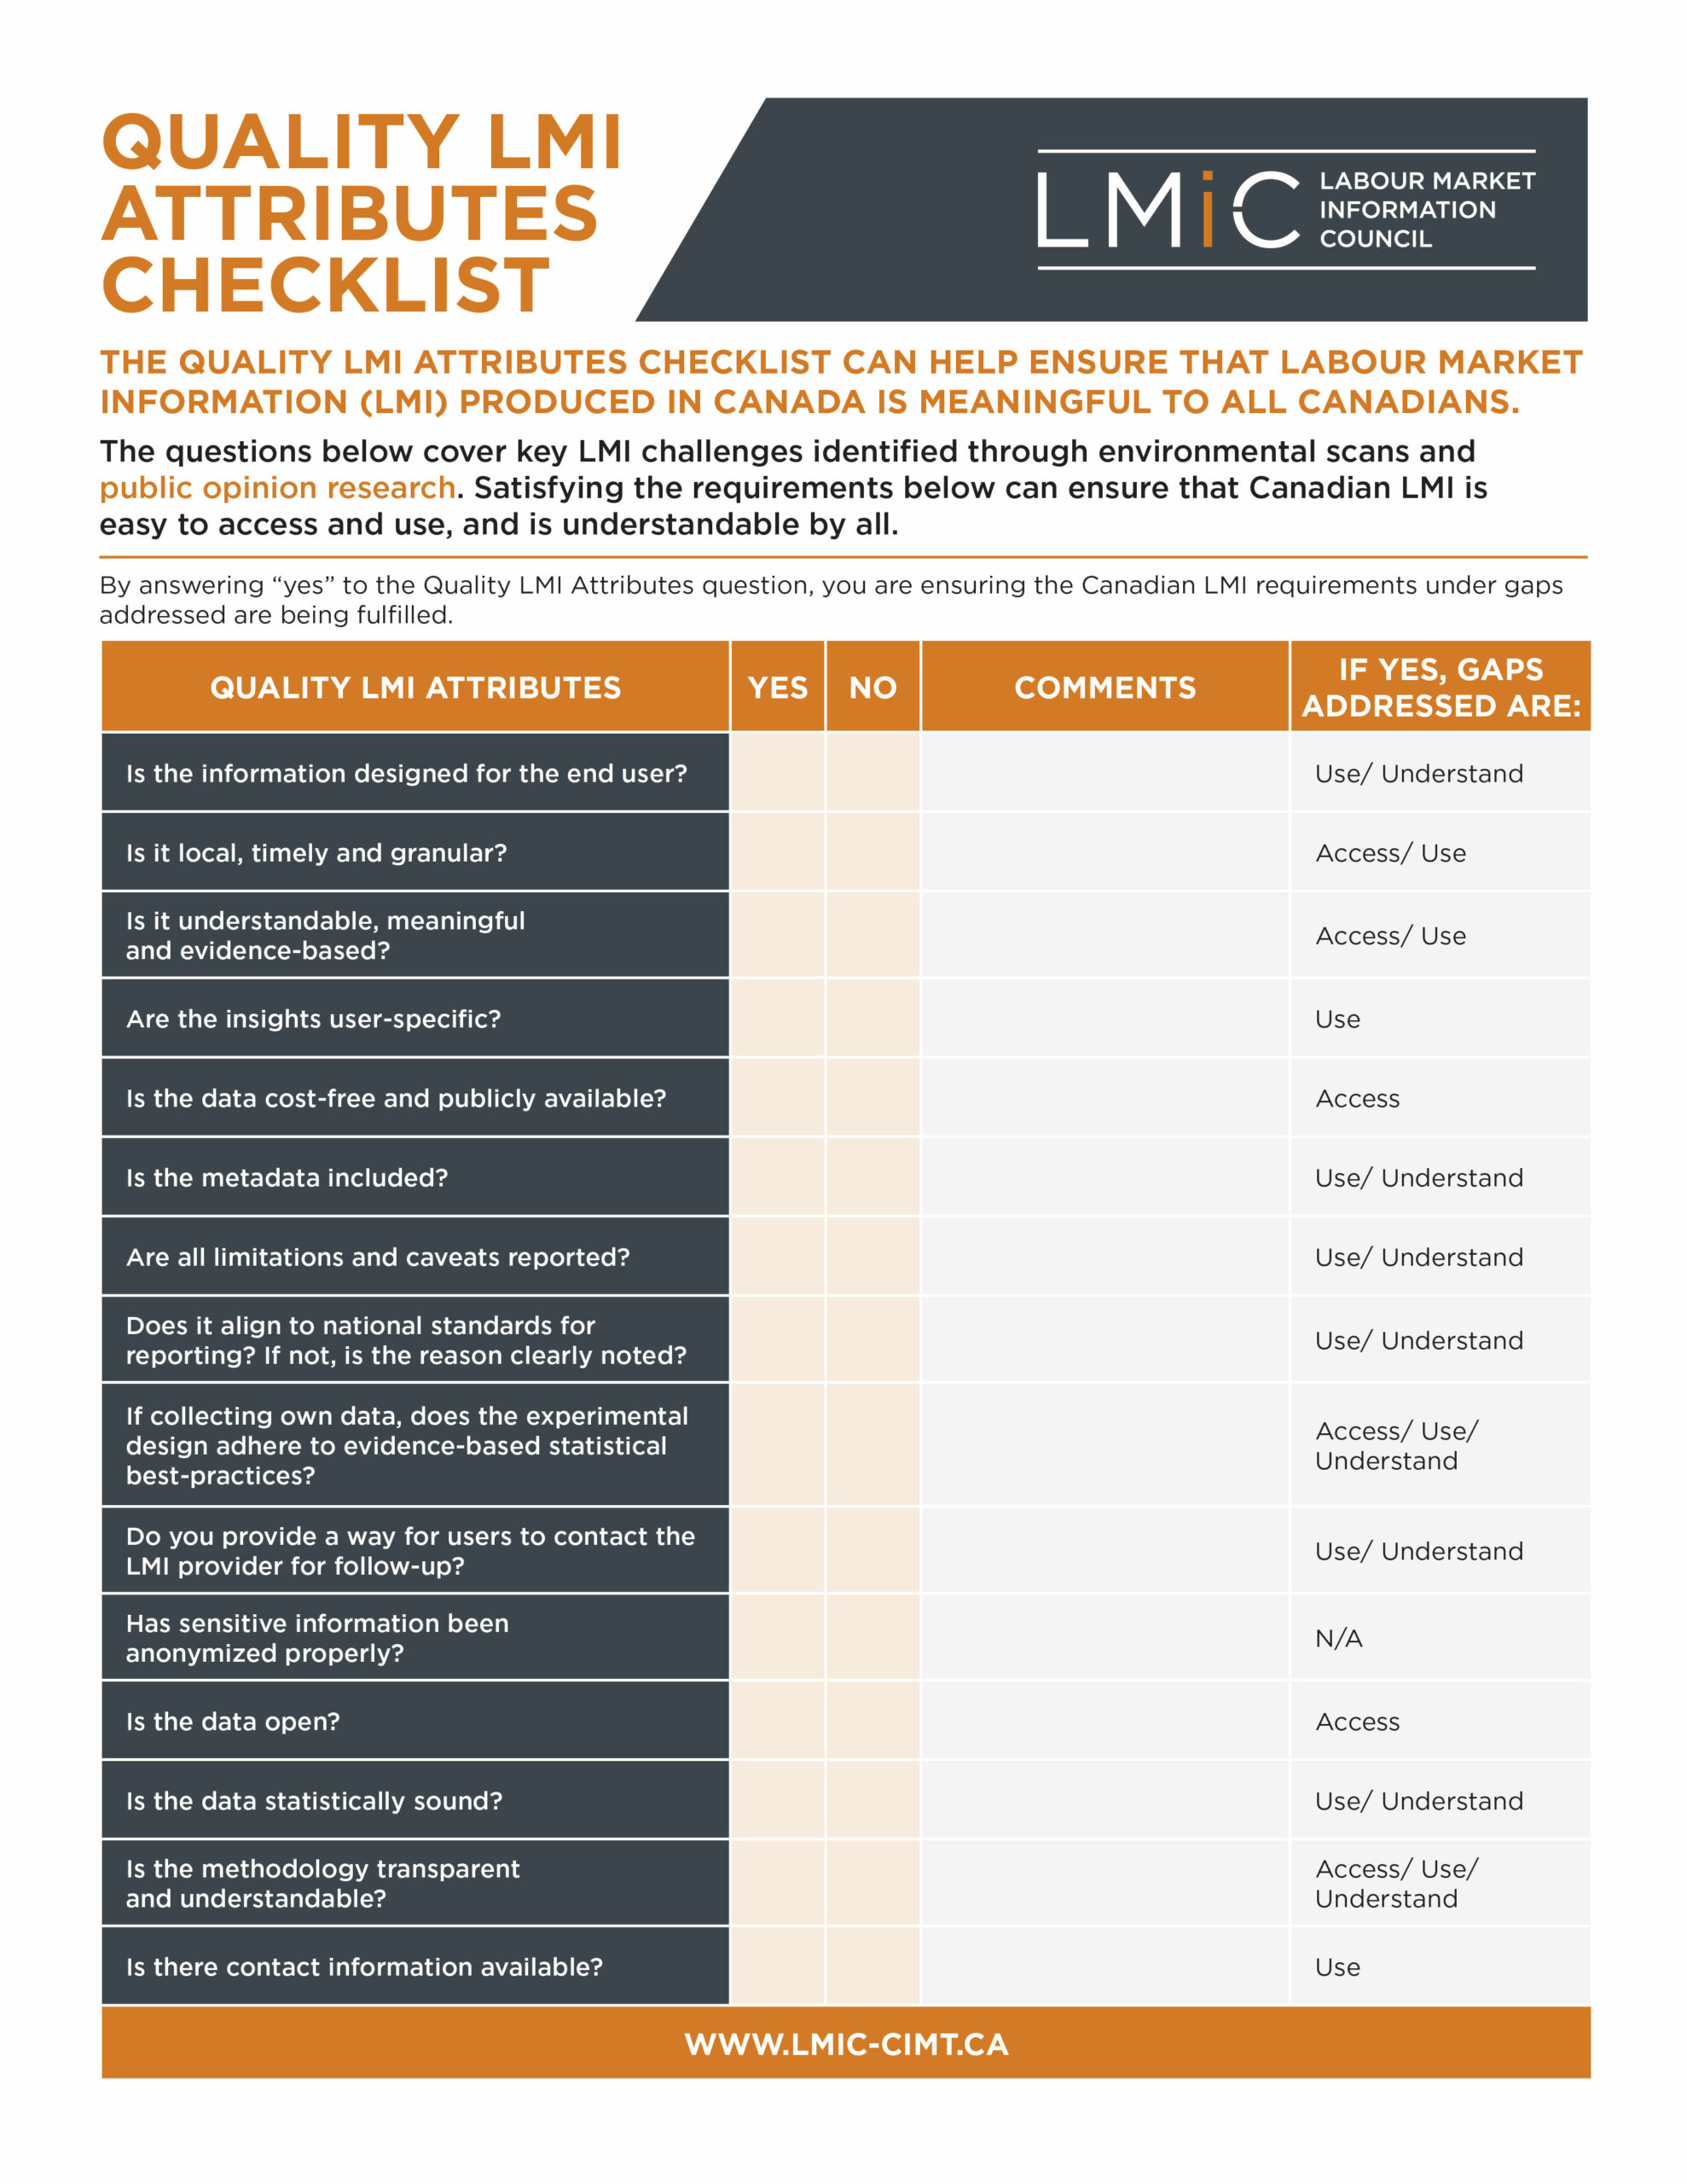 Quality-LMI-Attributes-Checklist-Img